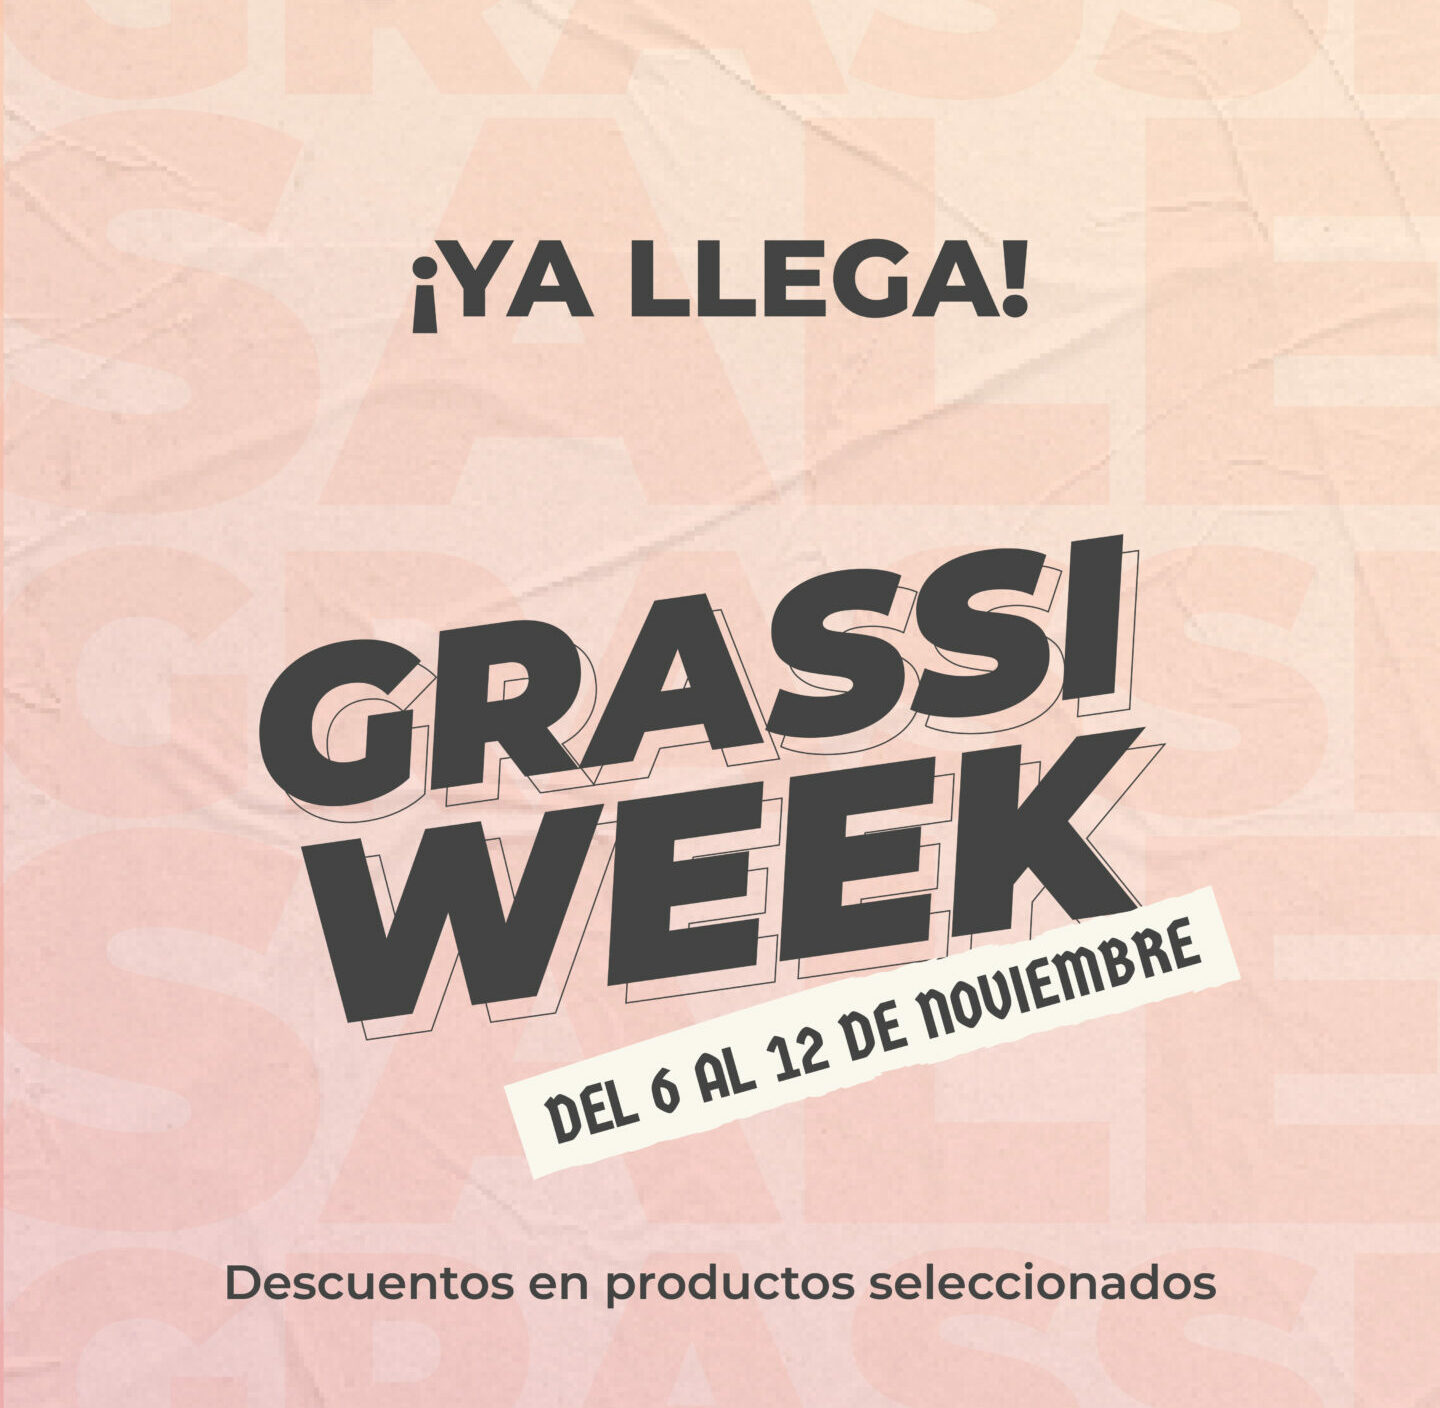 Llega el Grassi Week: descuentos del 6 al 12 de noviembre